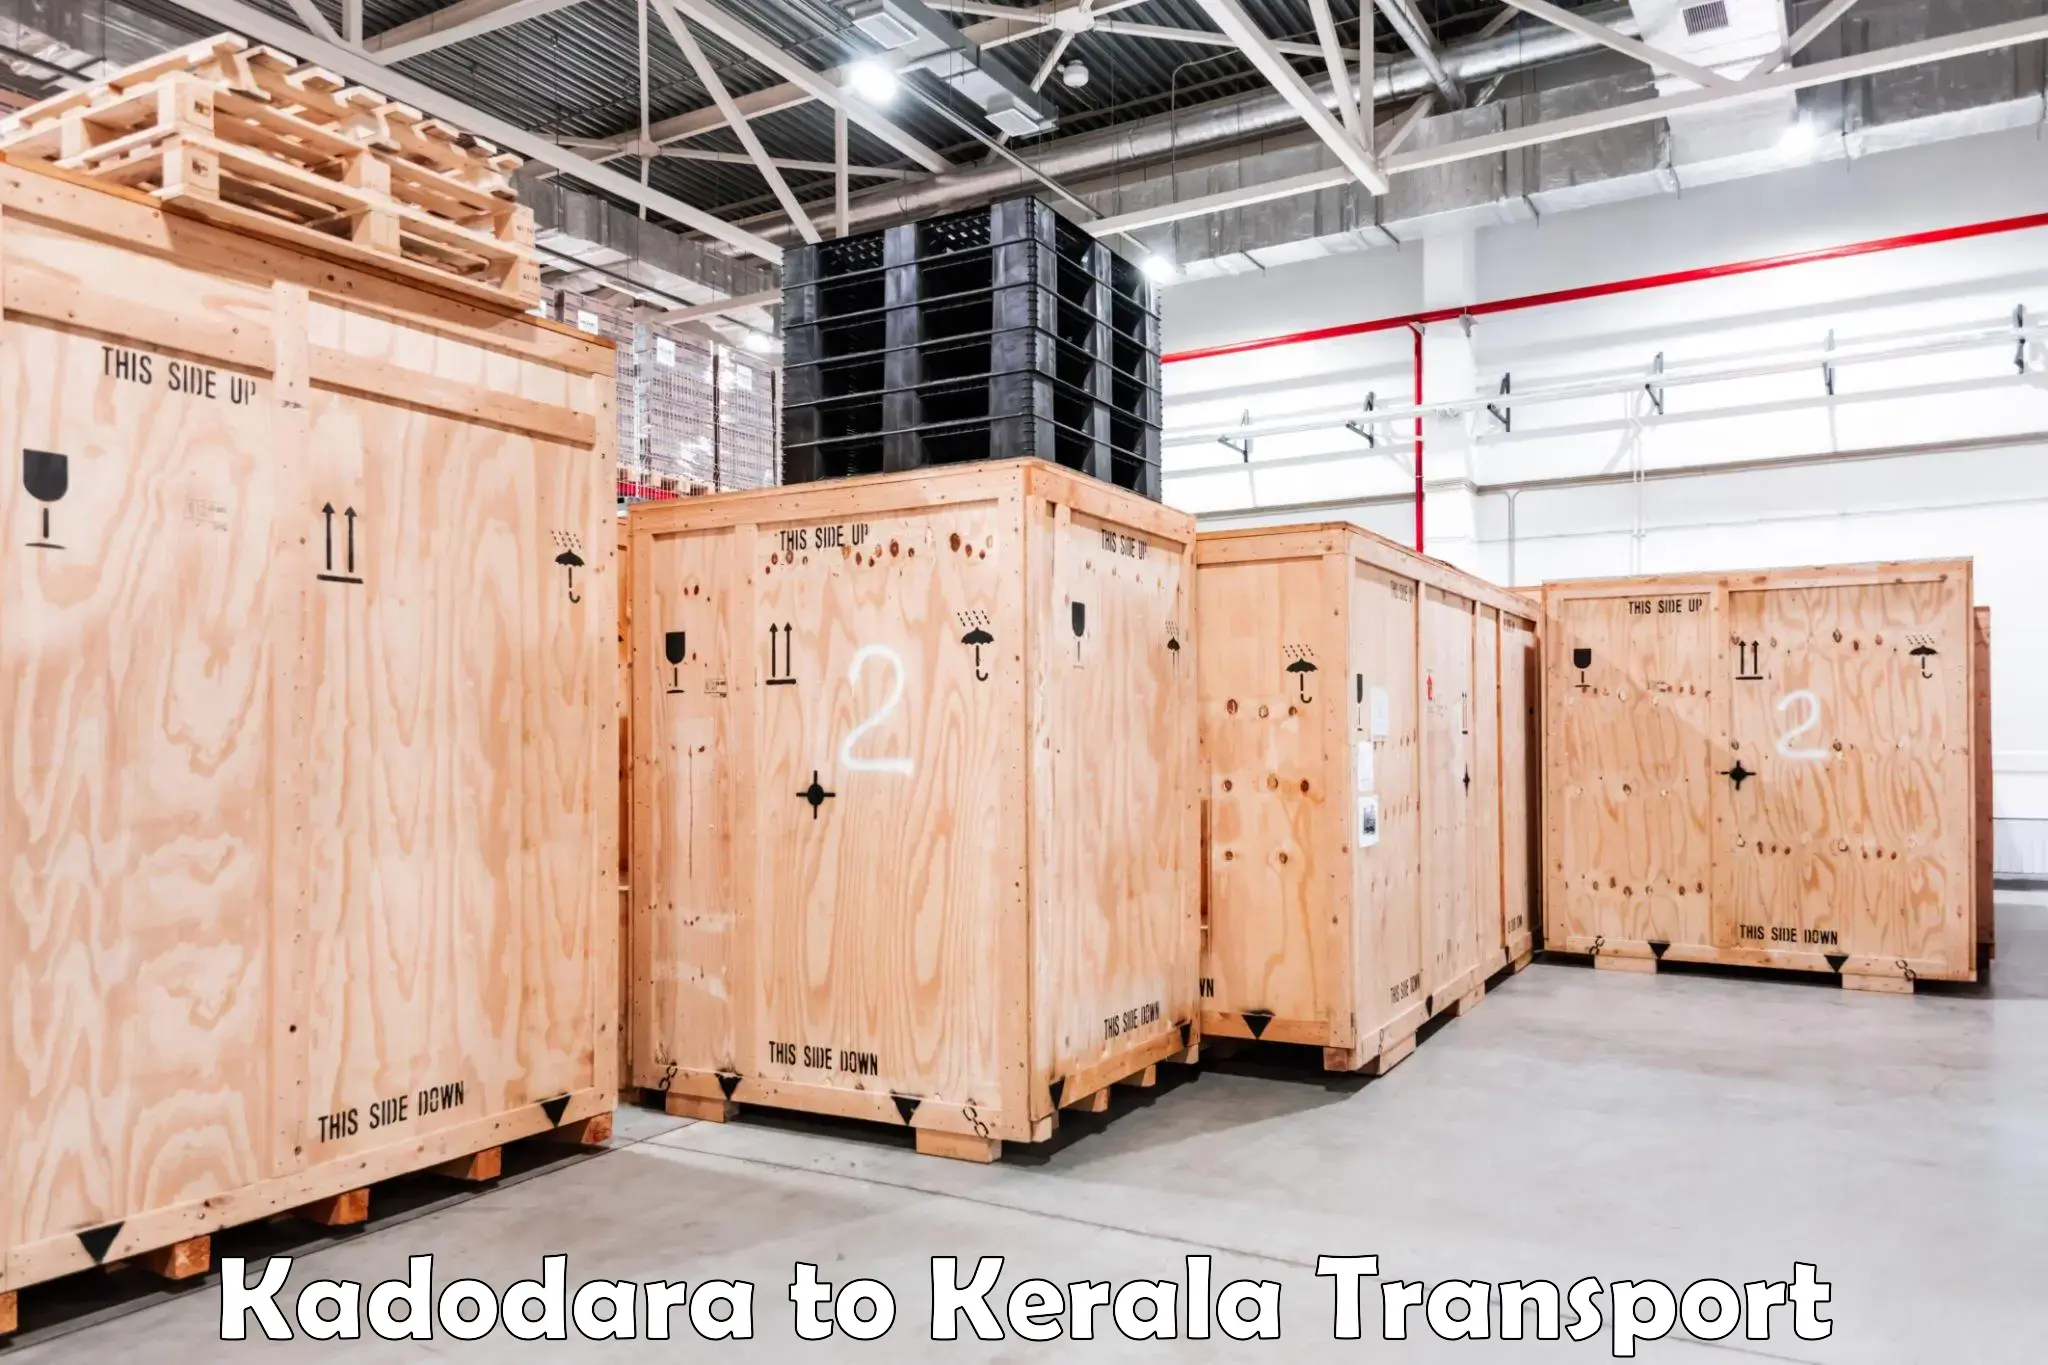 Online transport service Kadodara to Chungatra